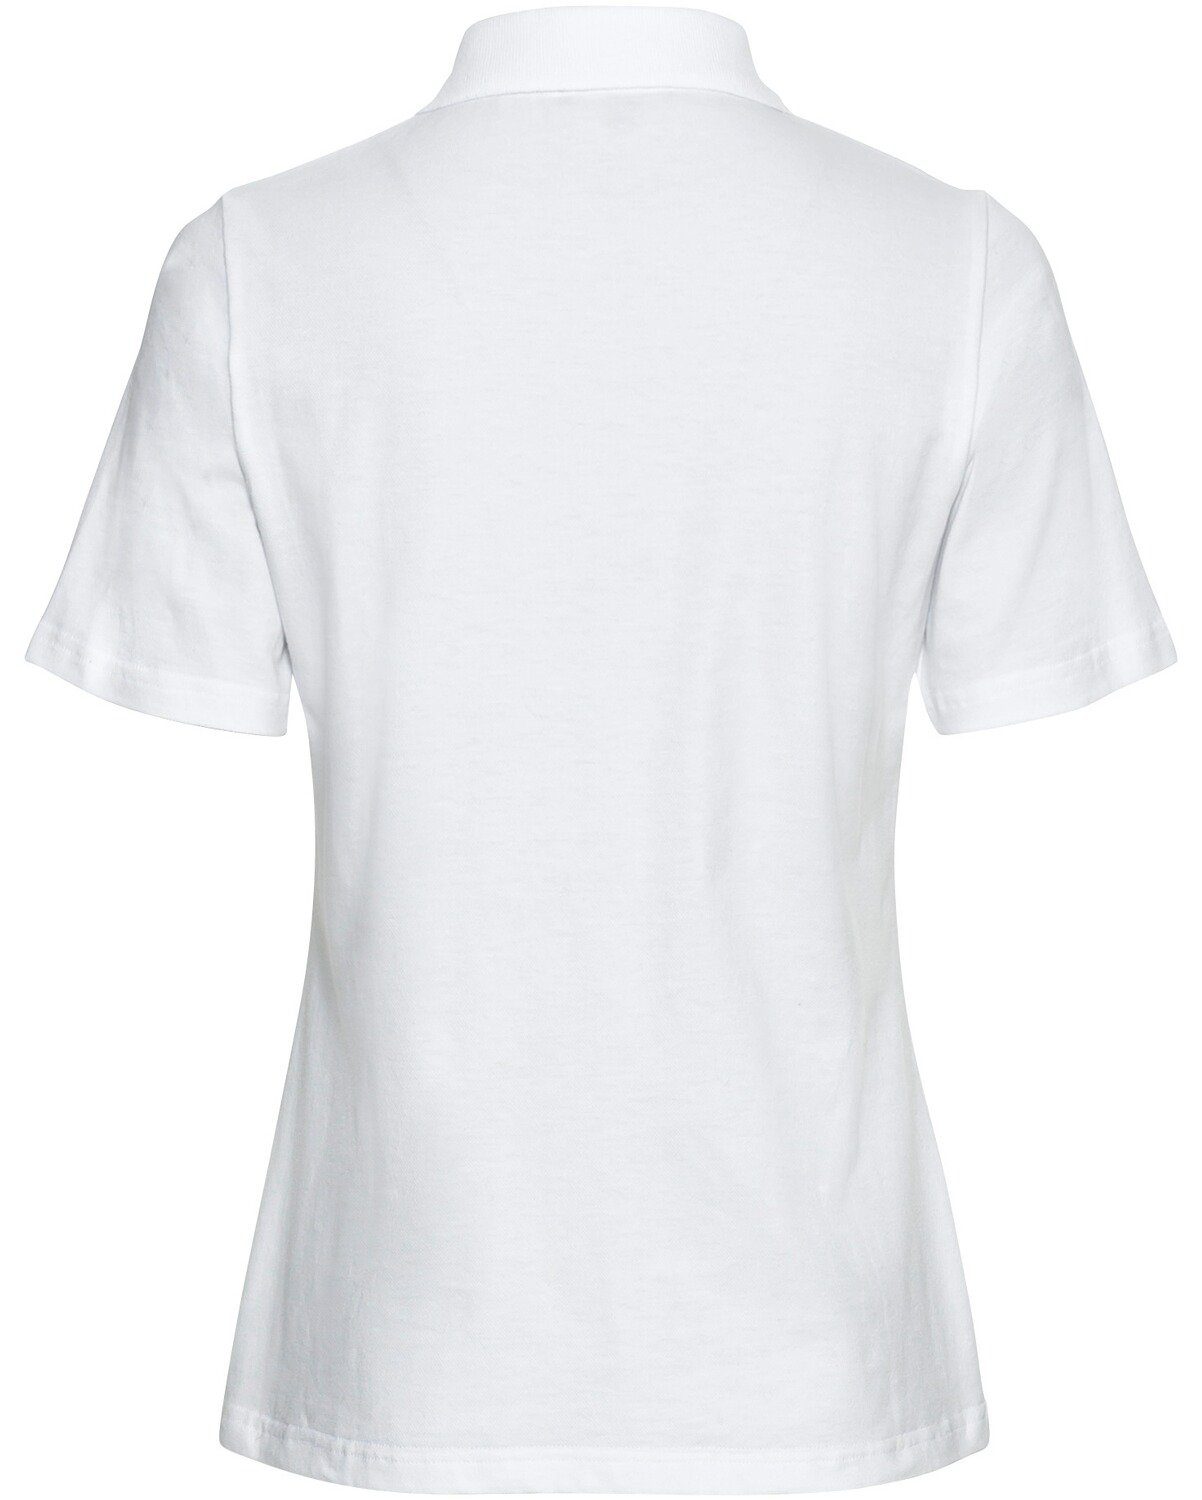 Poloshirt Piqué-Poloshirt Highmoor Zipper Weiß mit